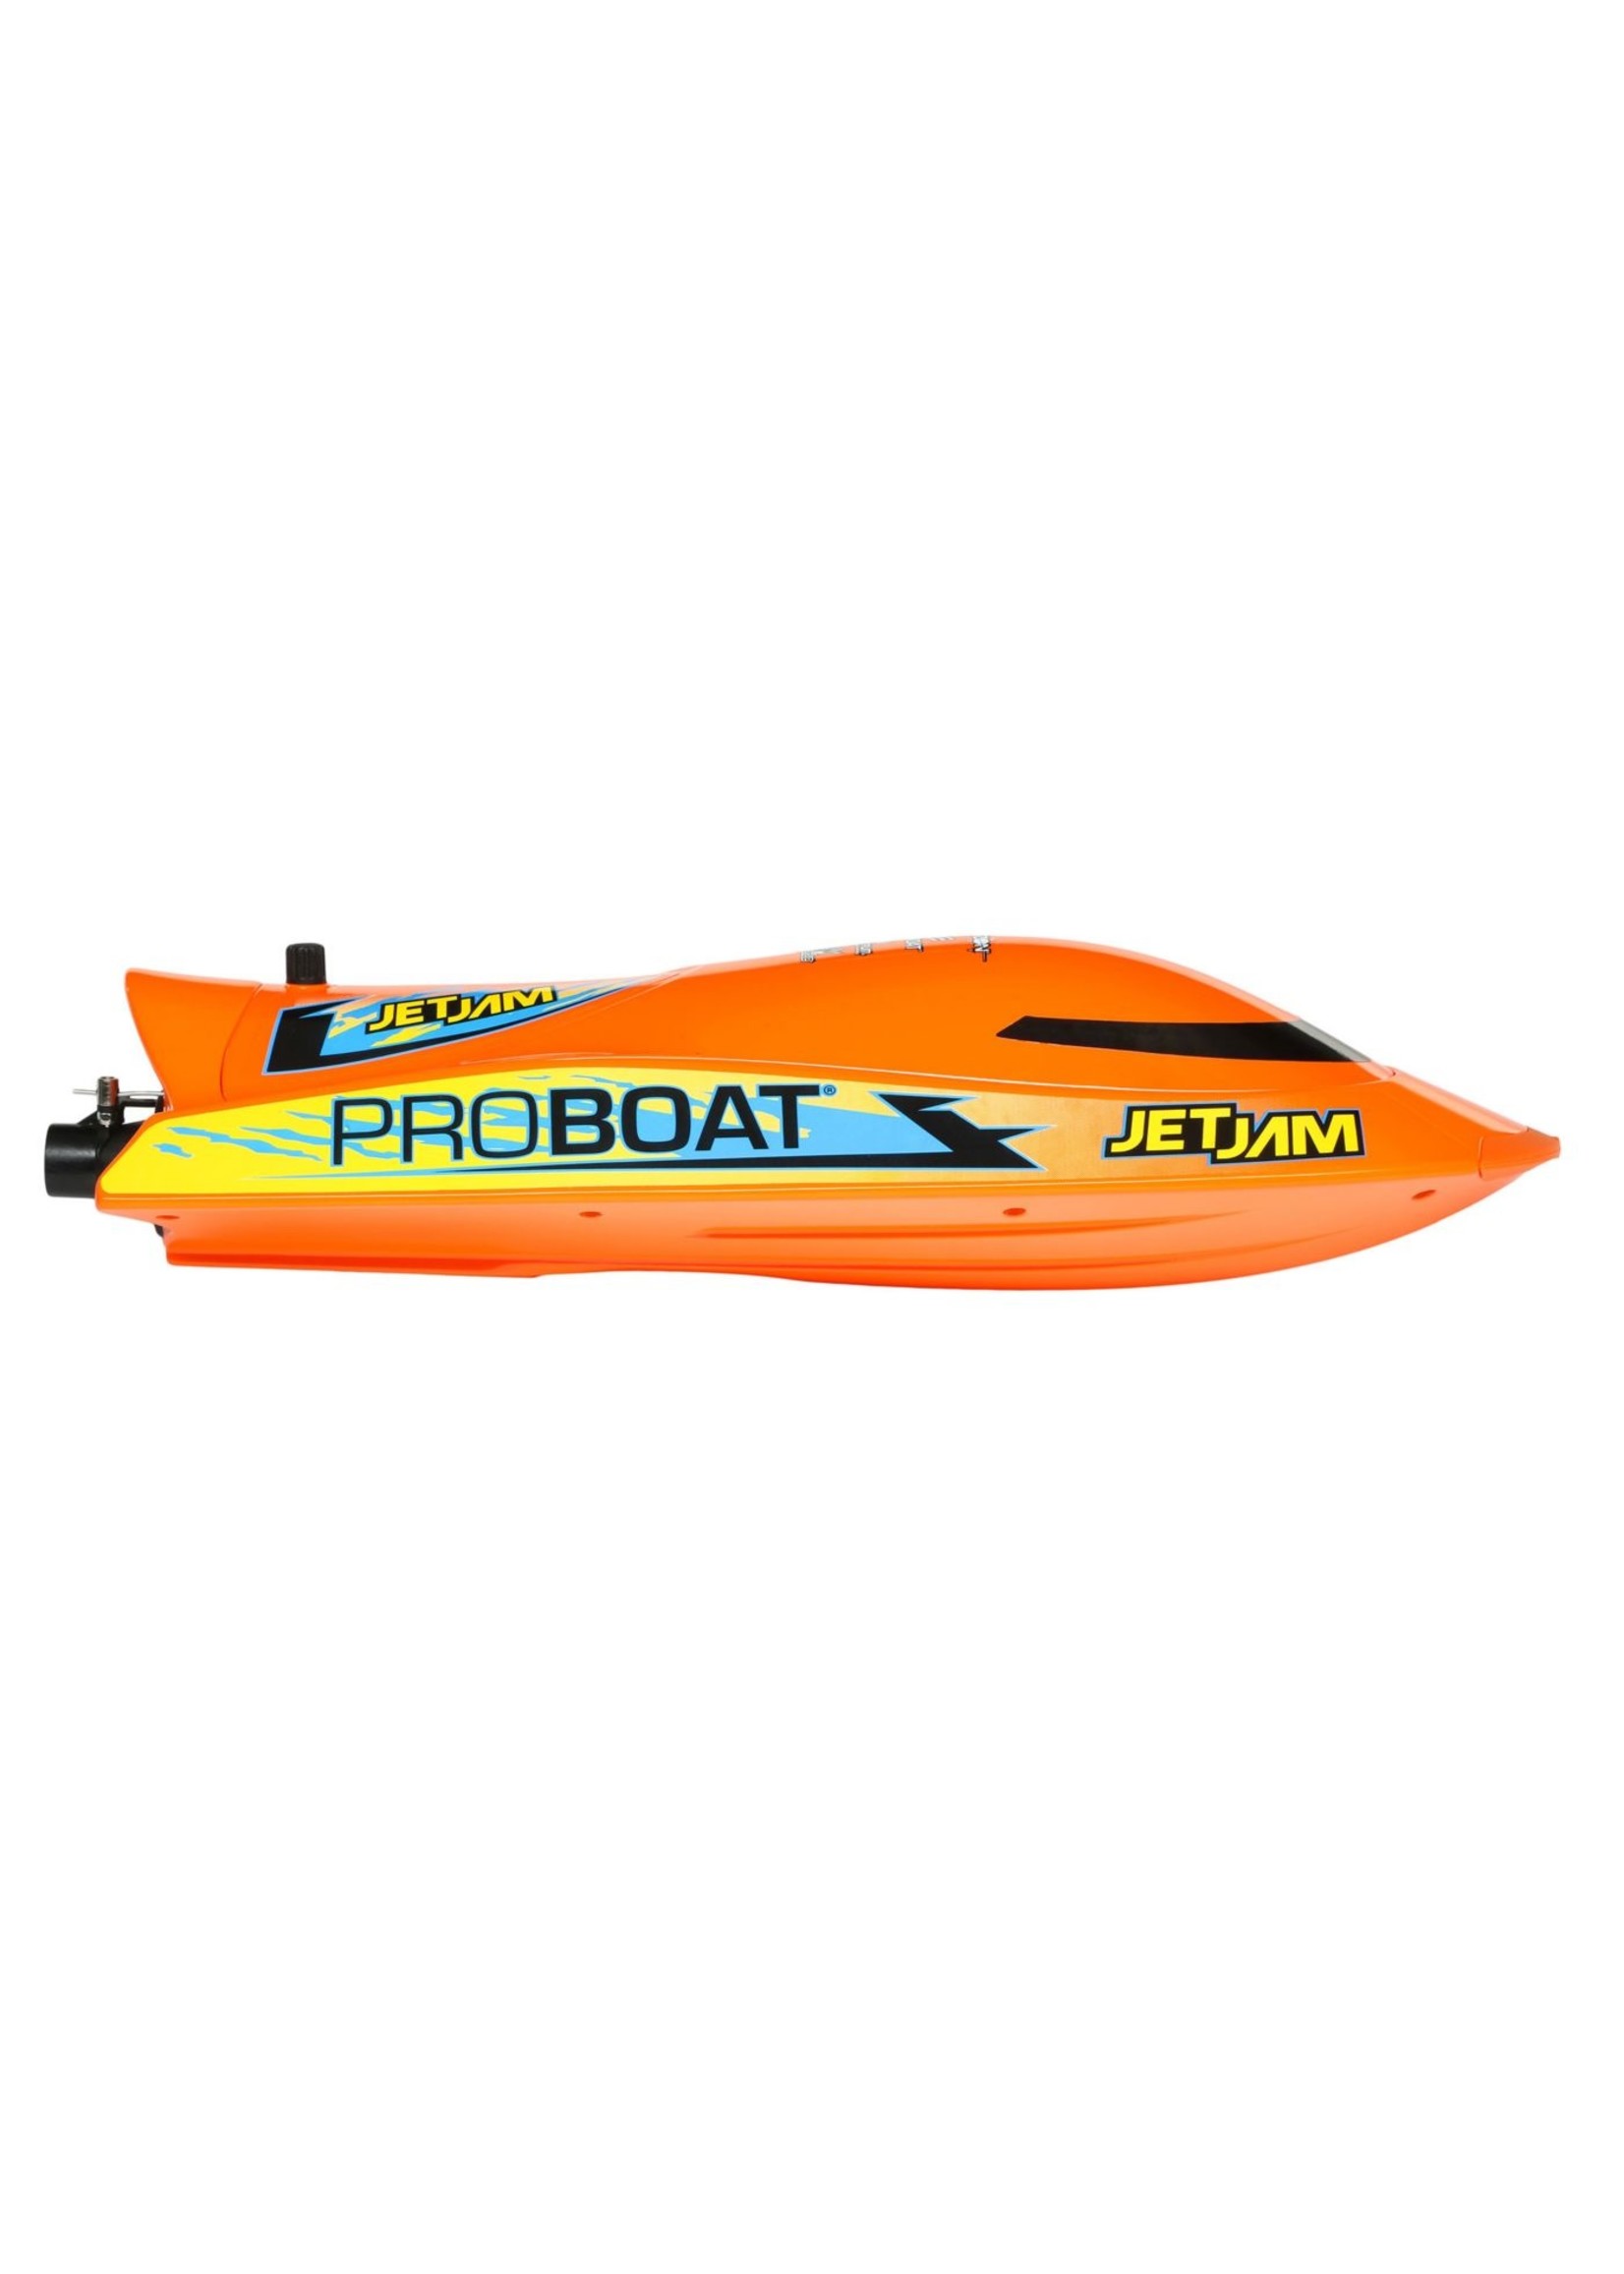 Pro Boat PRB 08031T1 - Jet Jam 12" Pool Racer Orange R